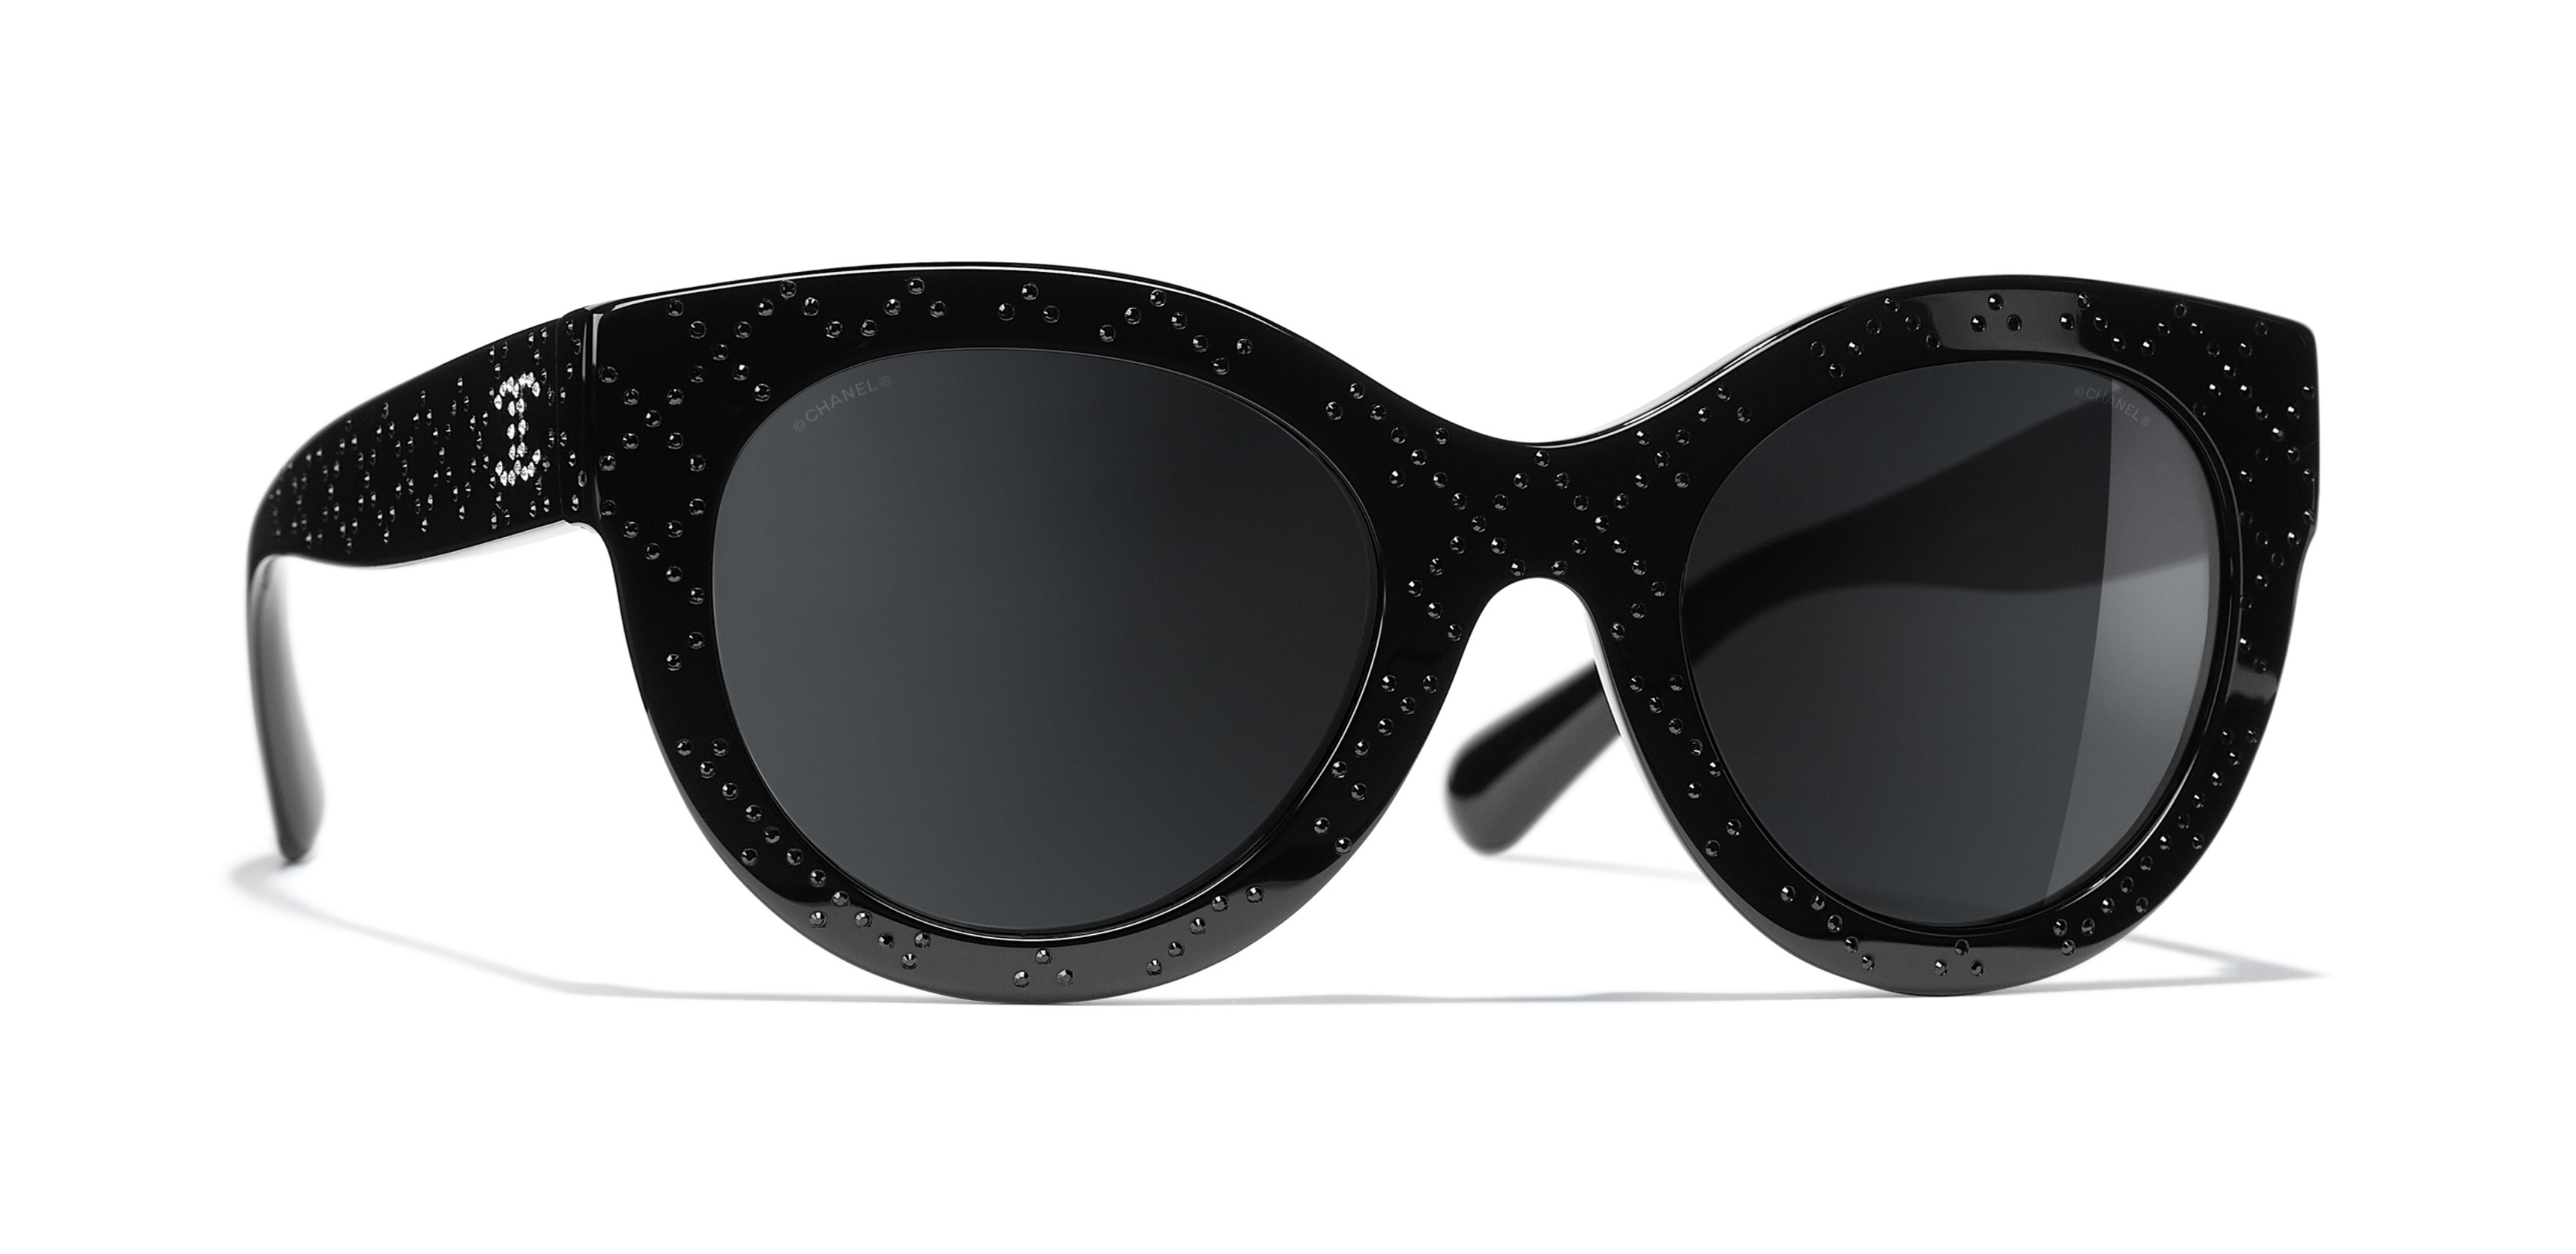 Chanel - Butterfly Sunglasses - Black Gray - Chanel Eyewear - Avvenice